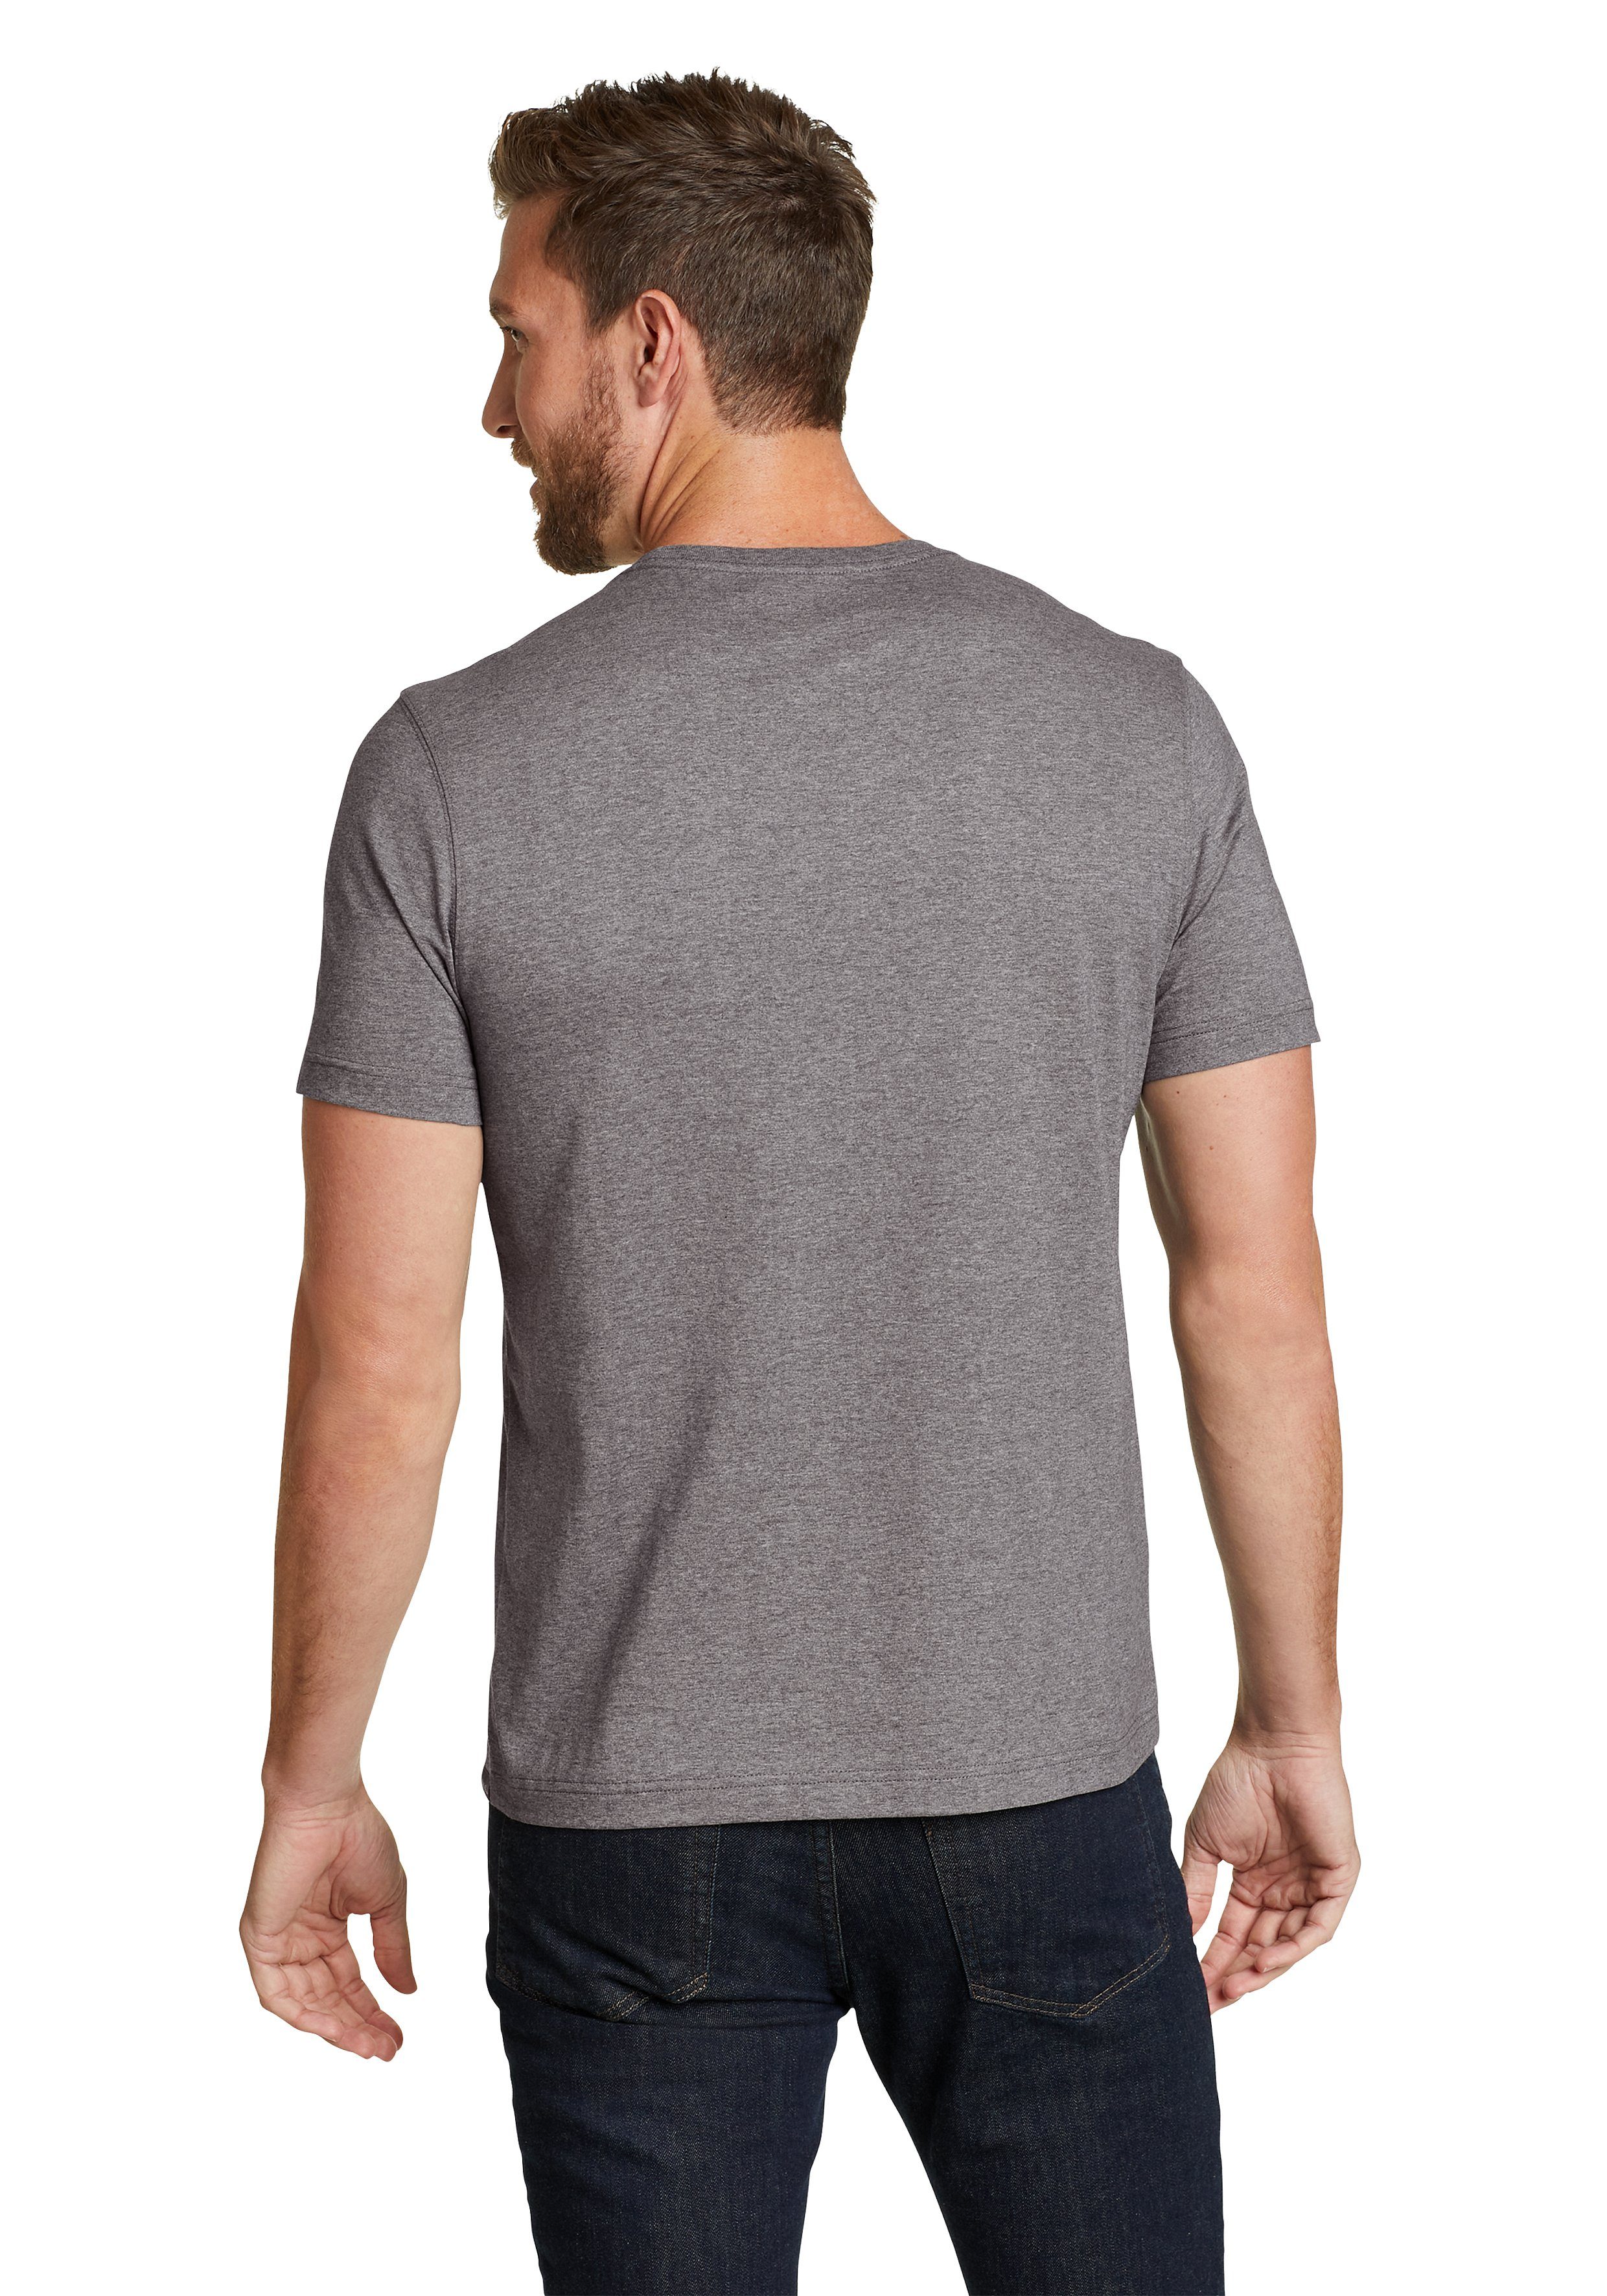 Eddie Bauer Meliertes fit Wash Shirt - Legend Slim - Baumwolle T-Shirt Grau 100